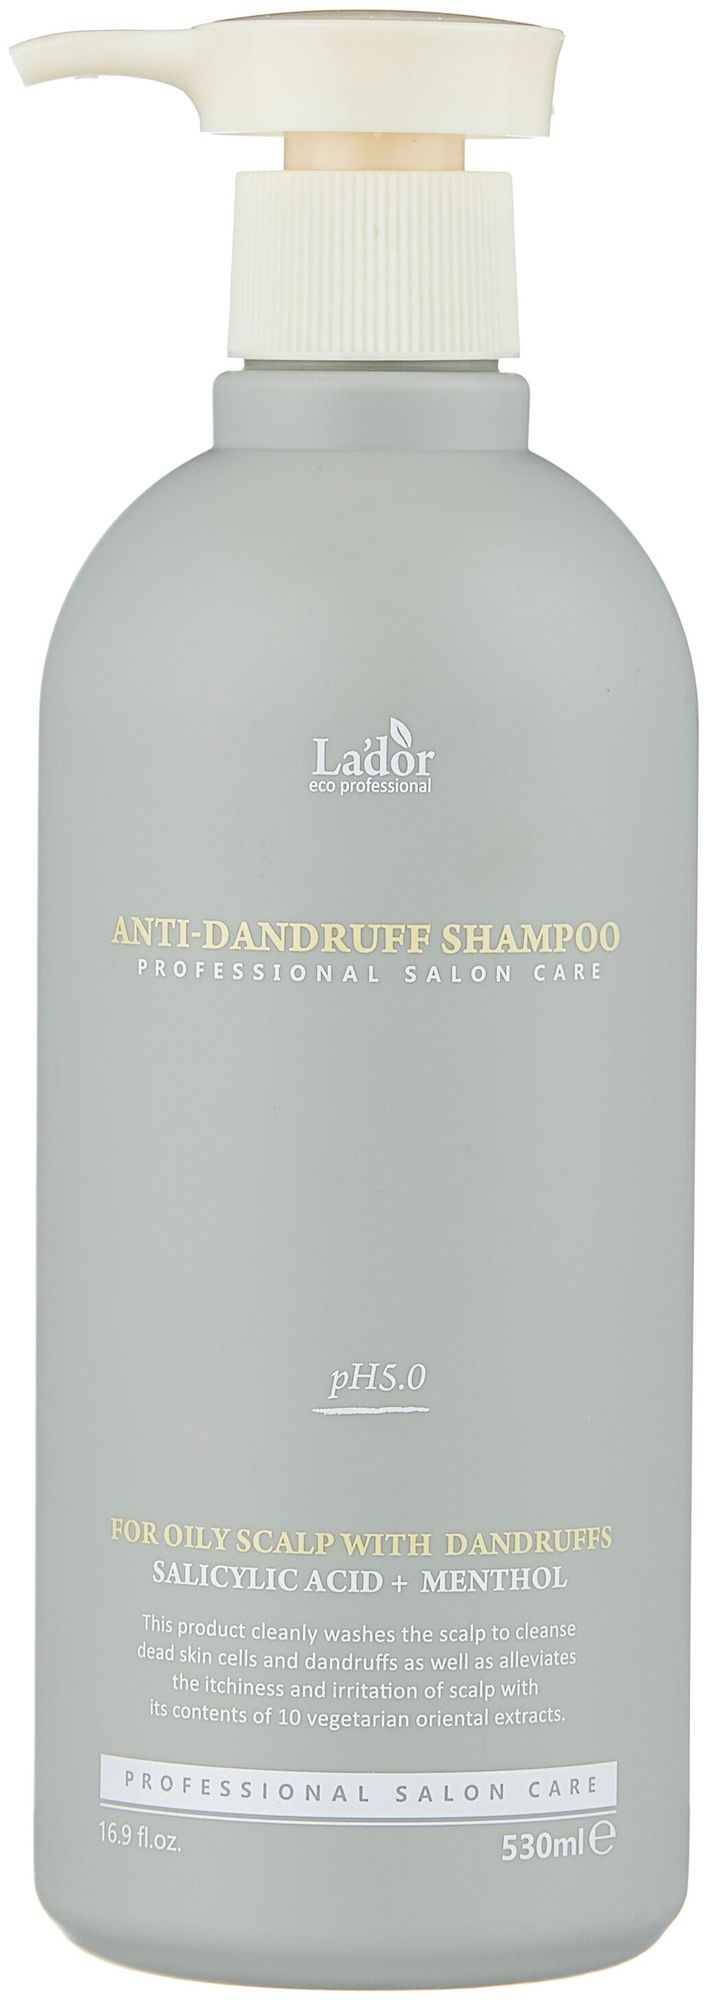 Шампунь против перхоти и зуда Lador Anti Dundruff Shampoo для жирной кожи головы 530мл - фото 1